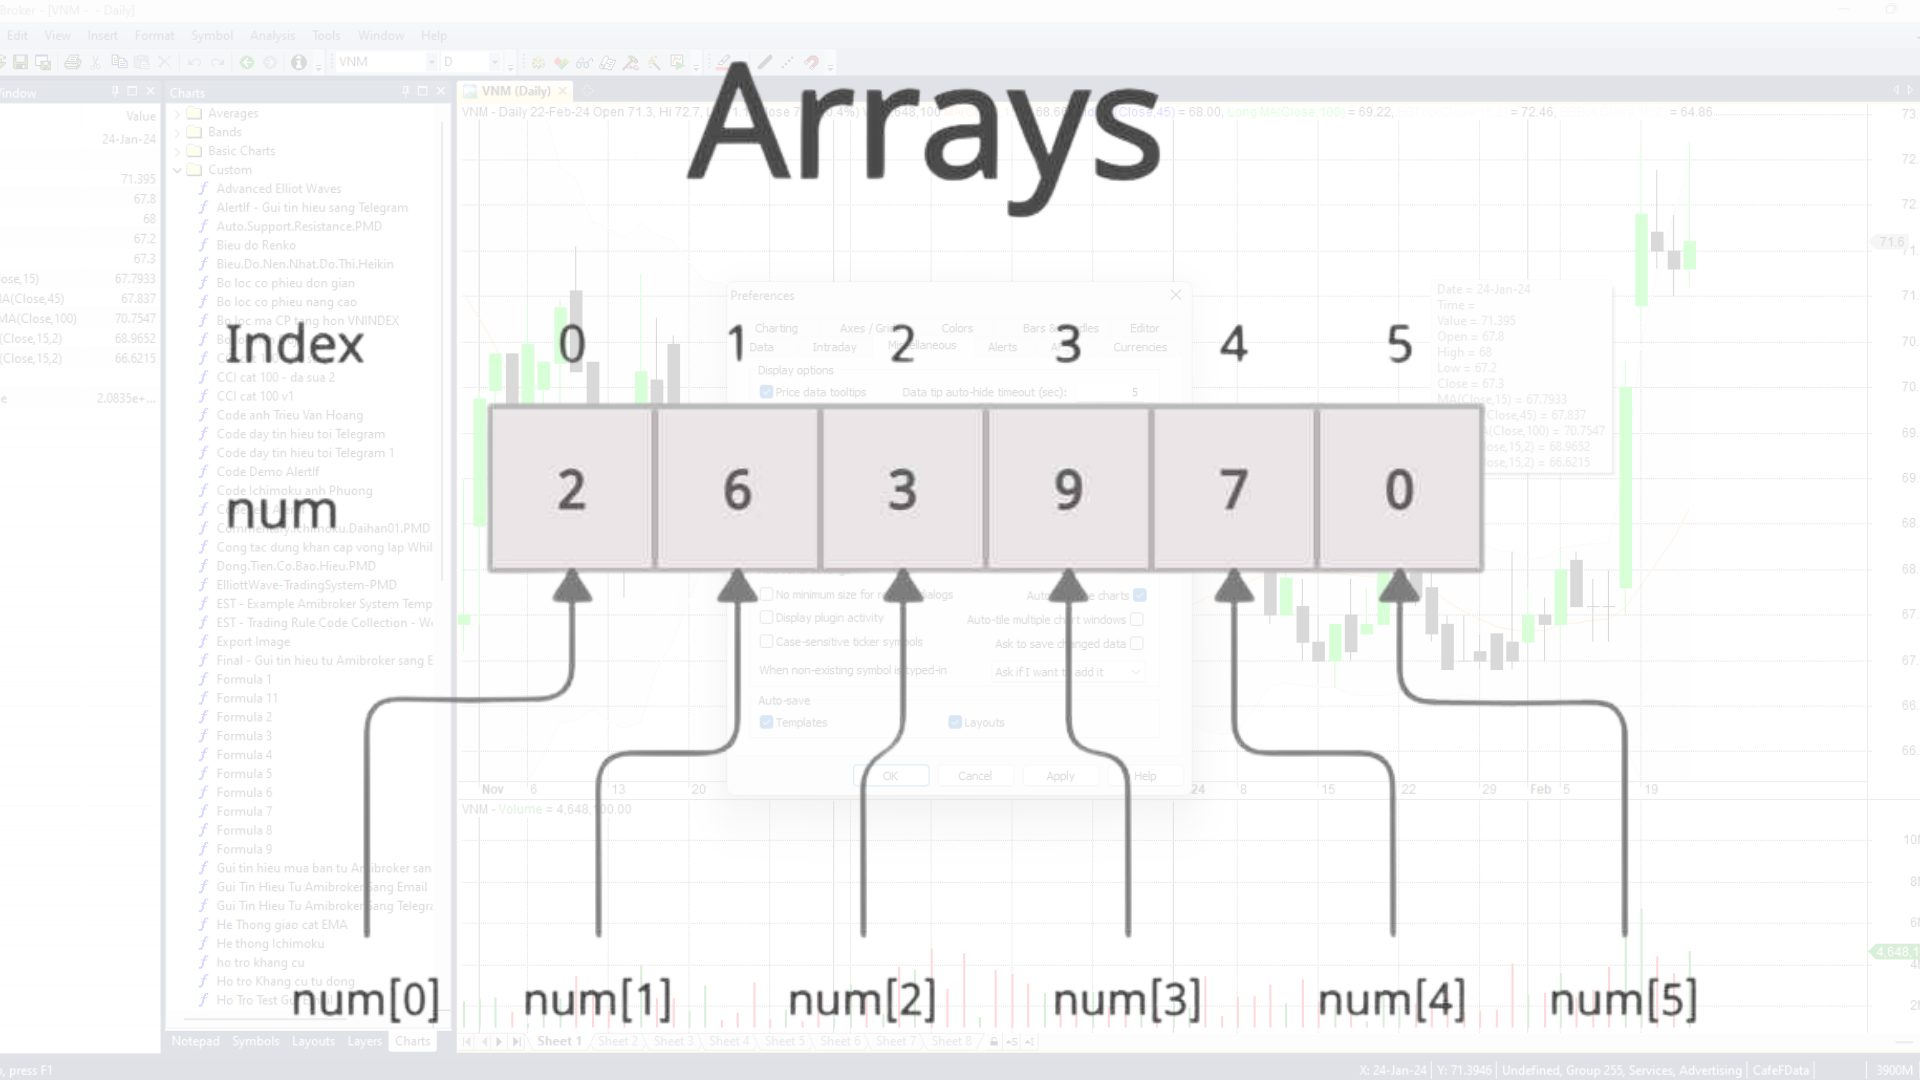 Cách ngôn ngữ Amibroker AFL hoạt động dựa trên Mảng dữ liệu (Array)